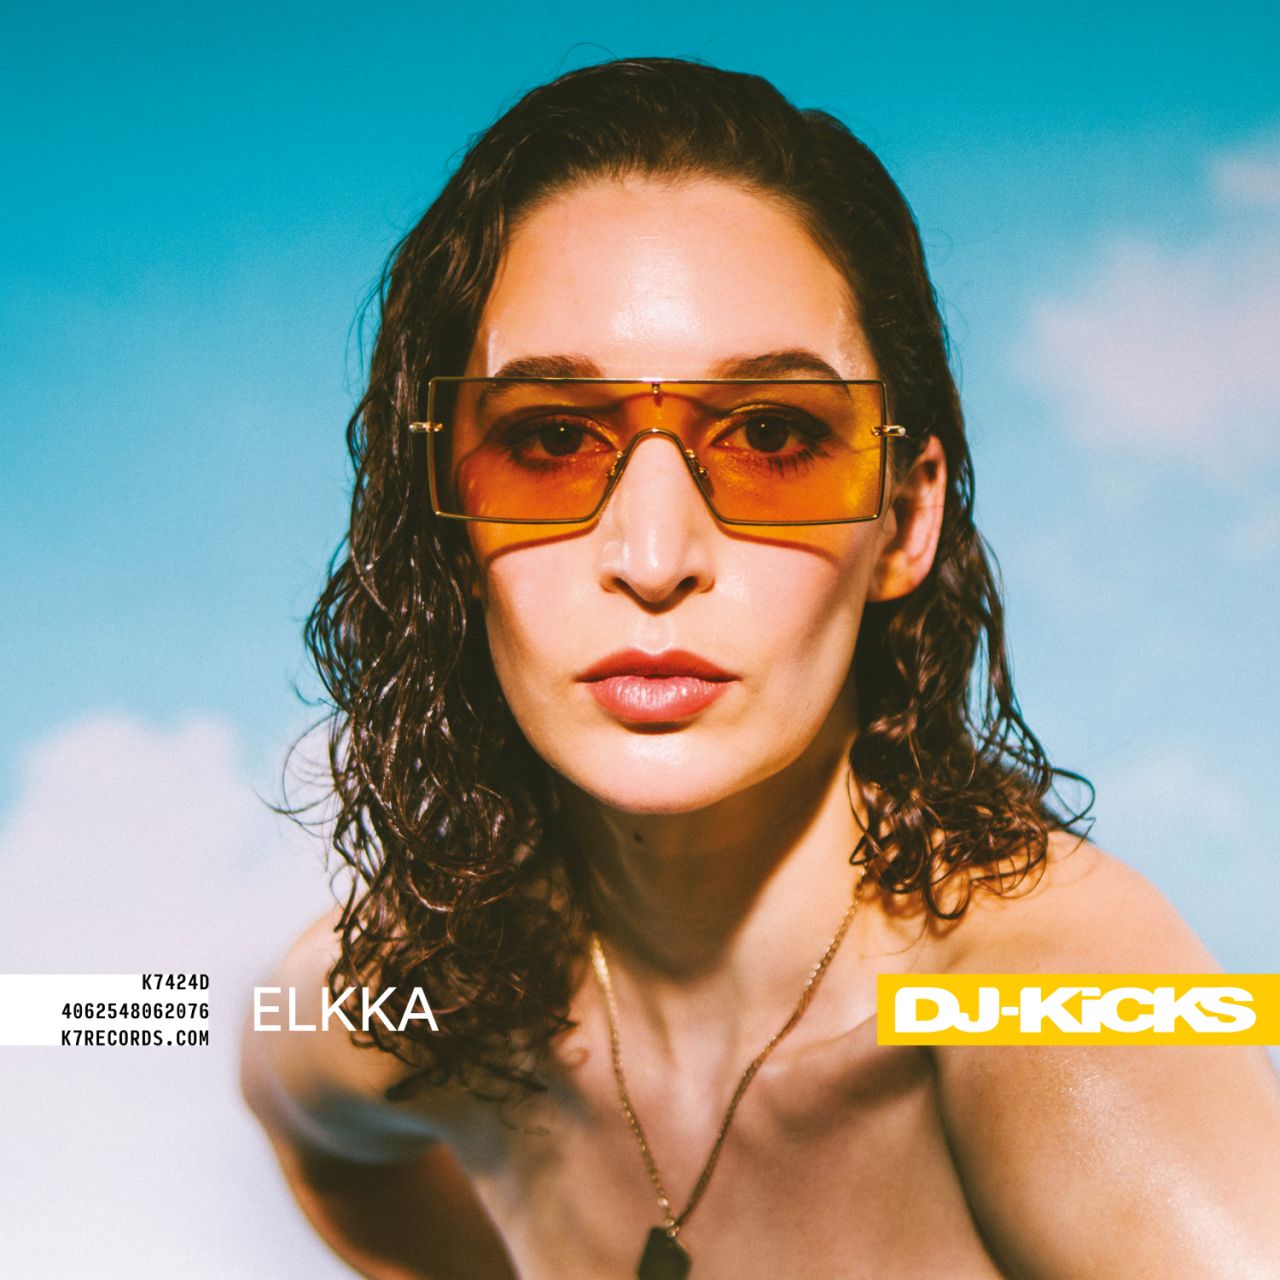 Elkka - DJ Kicks - 2LP